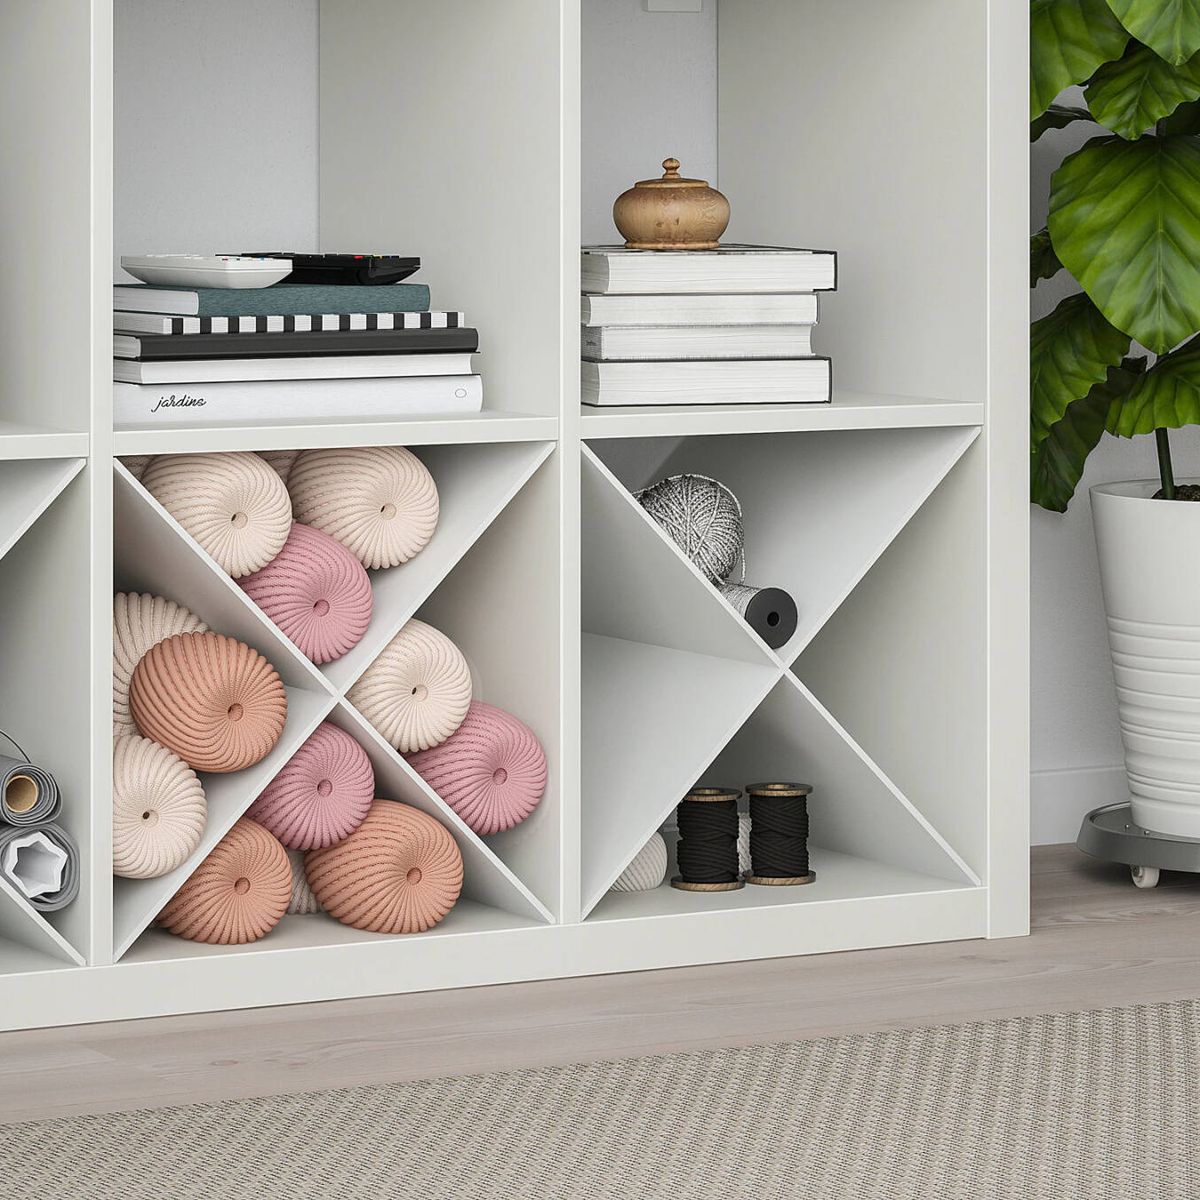 Ikea tiene la solución para aprovechar las esquinas: una estantería  rinconera